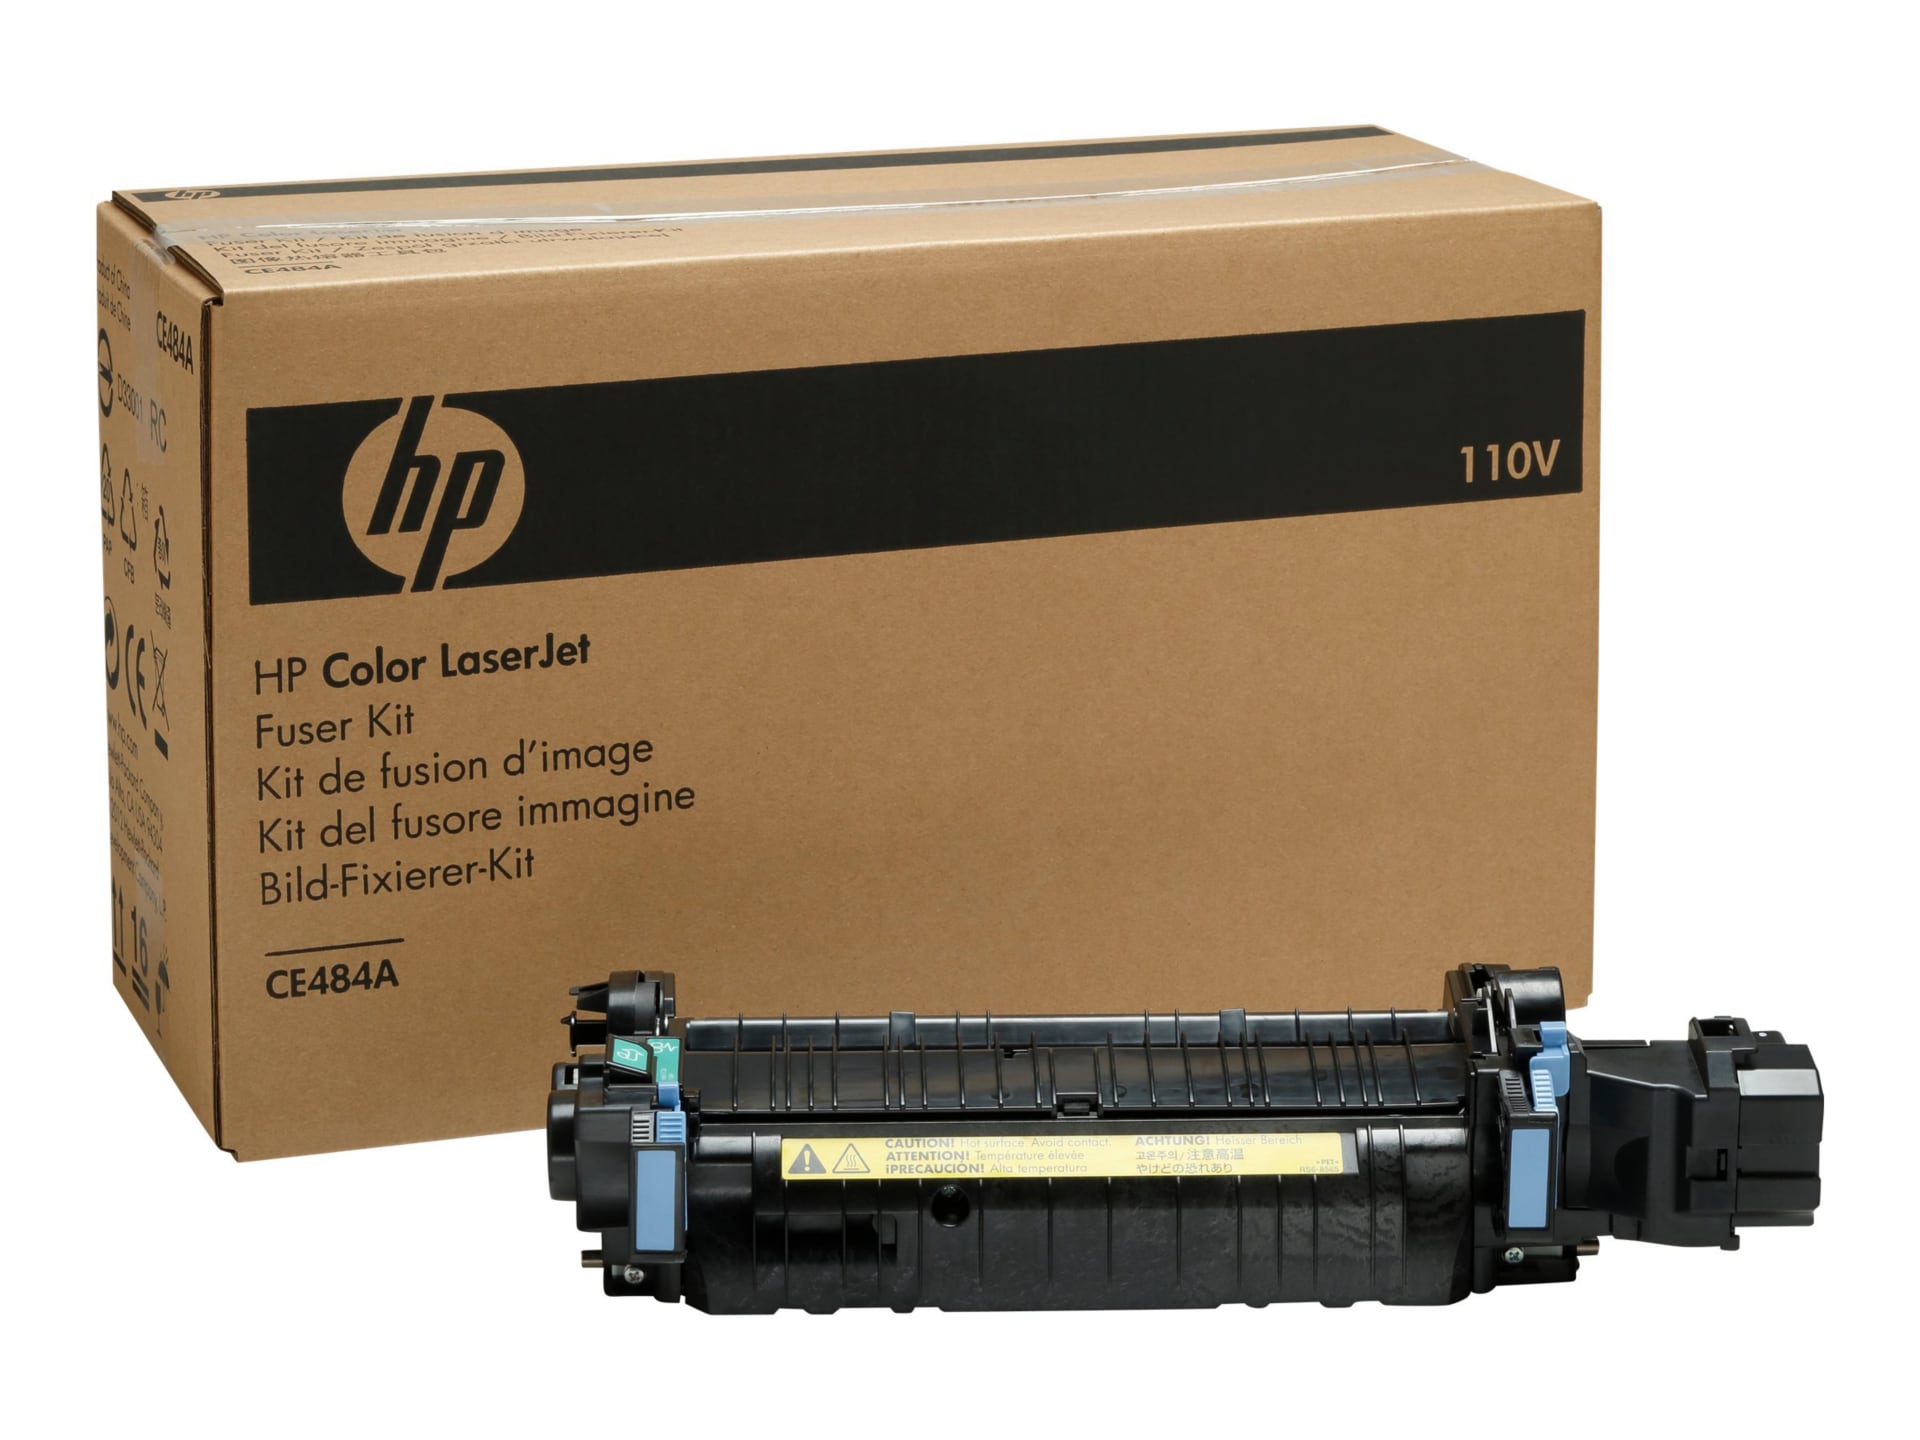 HP CE484A Color LaserJet Fuser Kit